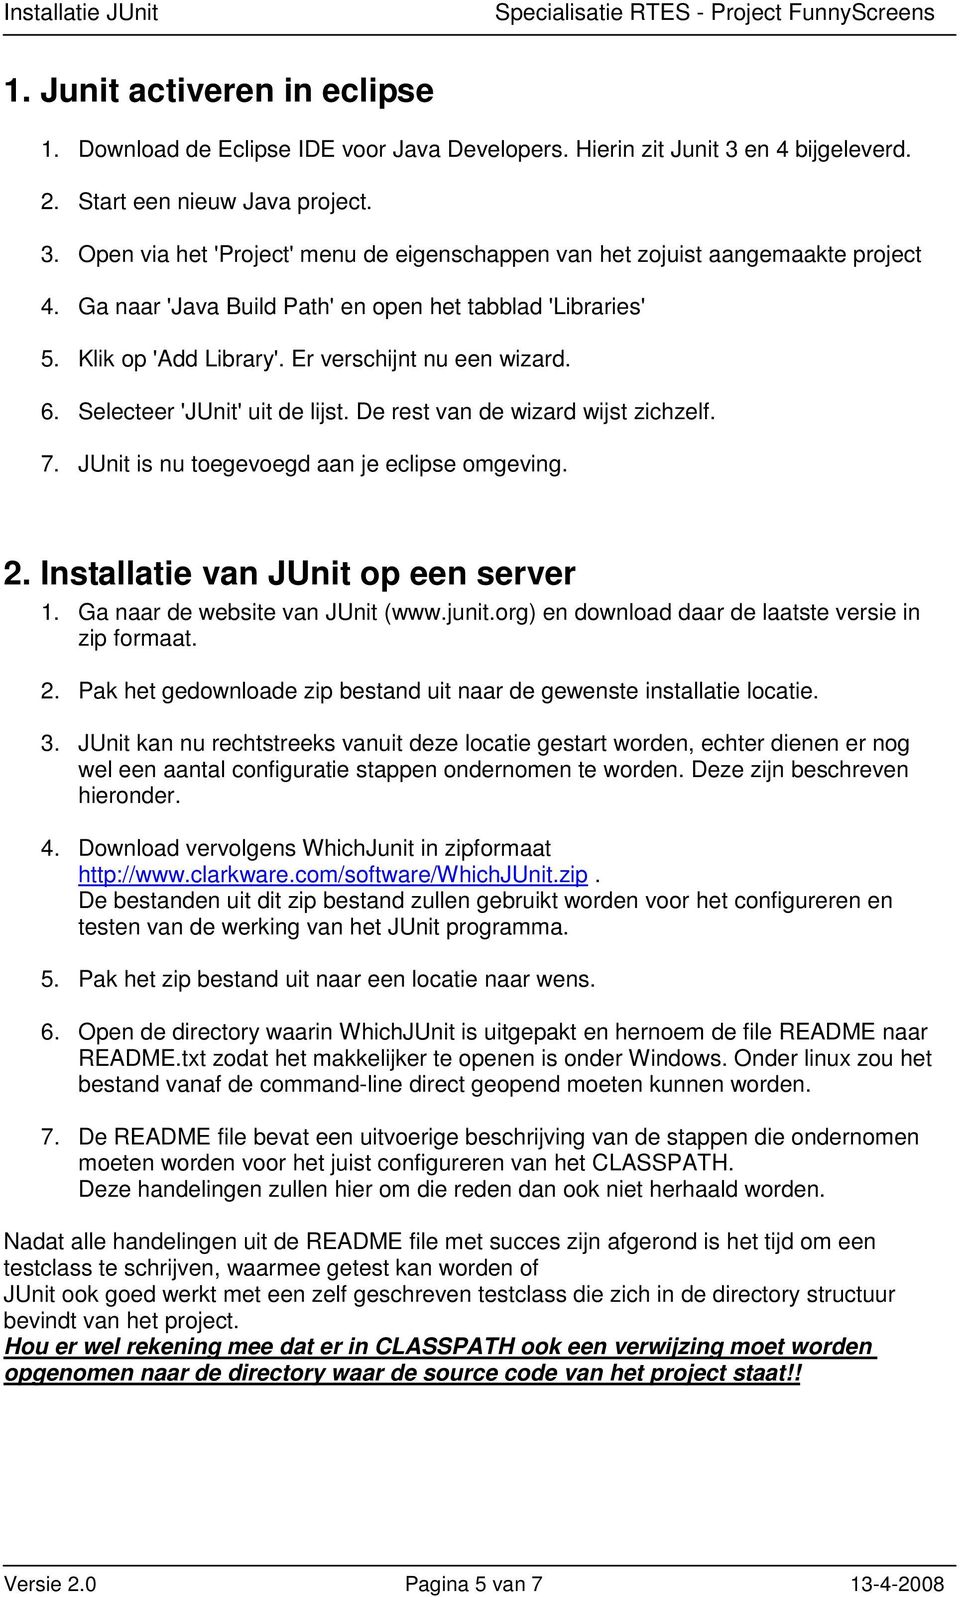 JUnit is nu toegevoegd aan je eclipse omgeving. 2. Installatie van JUnit op een server 1. Ga naar de website van JUnit (www.junit.org) en download daar de laatste versie in zip formaat. 2. Pak het gedownloade zip bestand uit naar de gewenste installatie locatie.